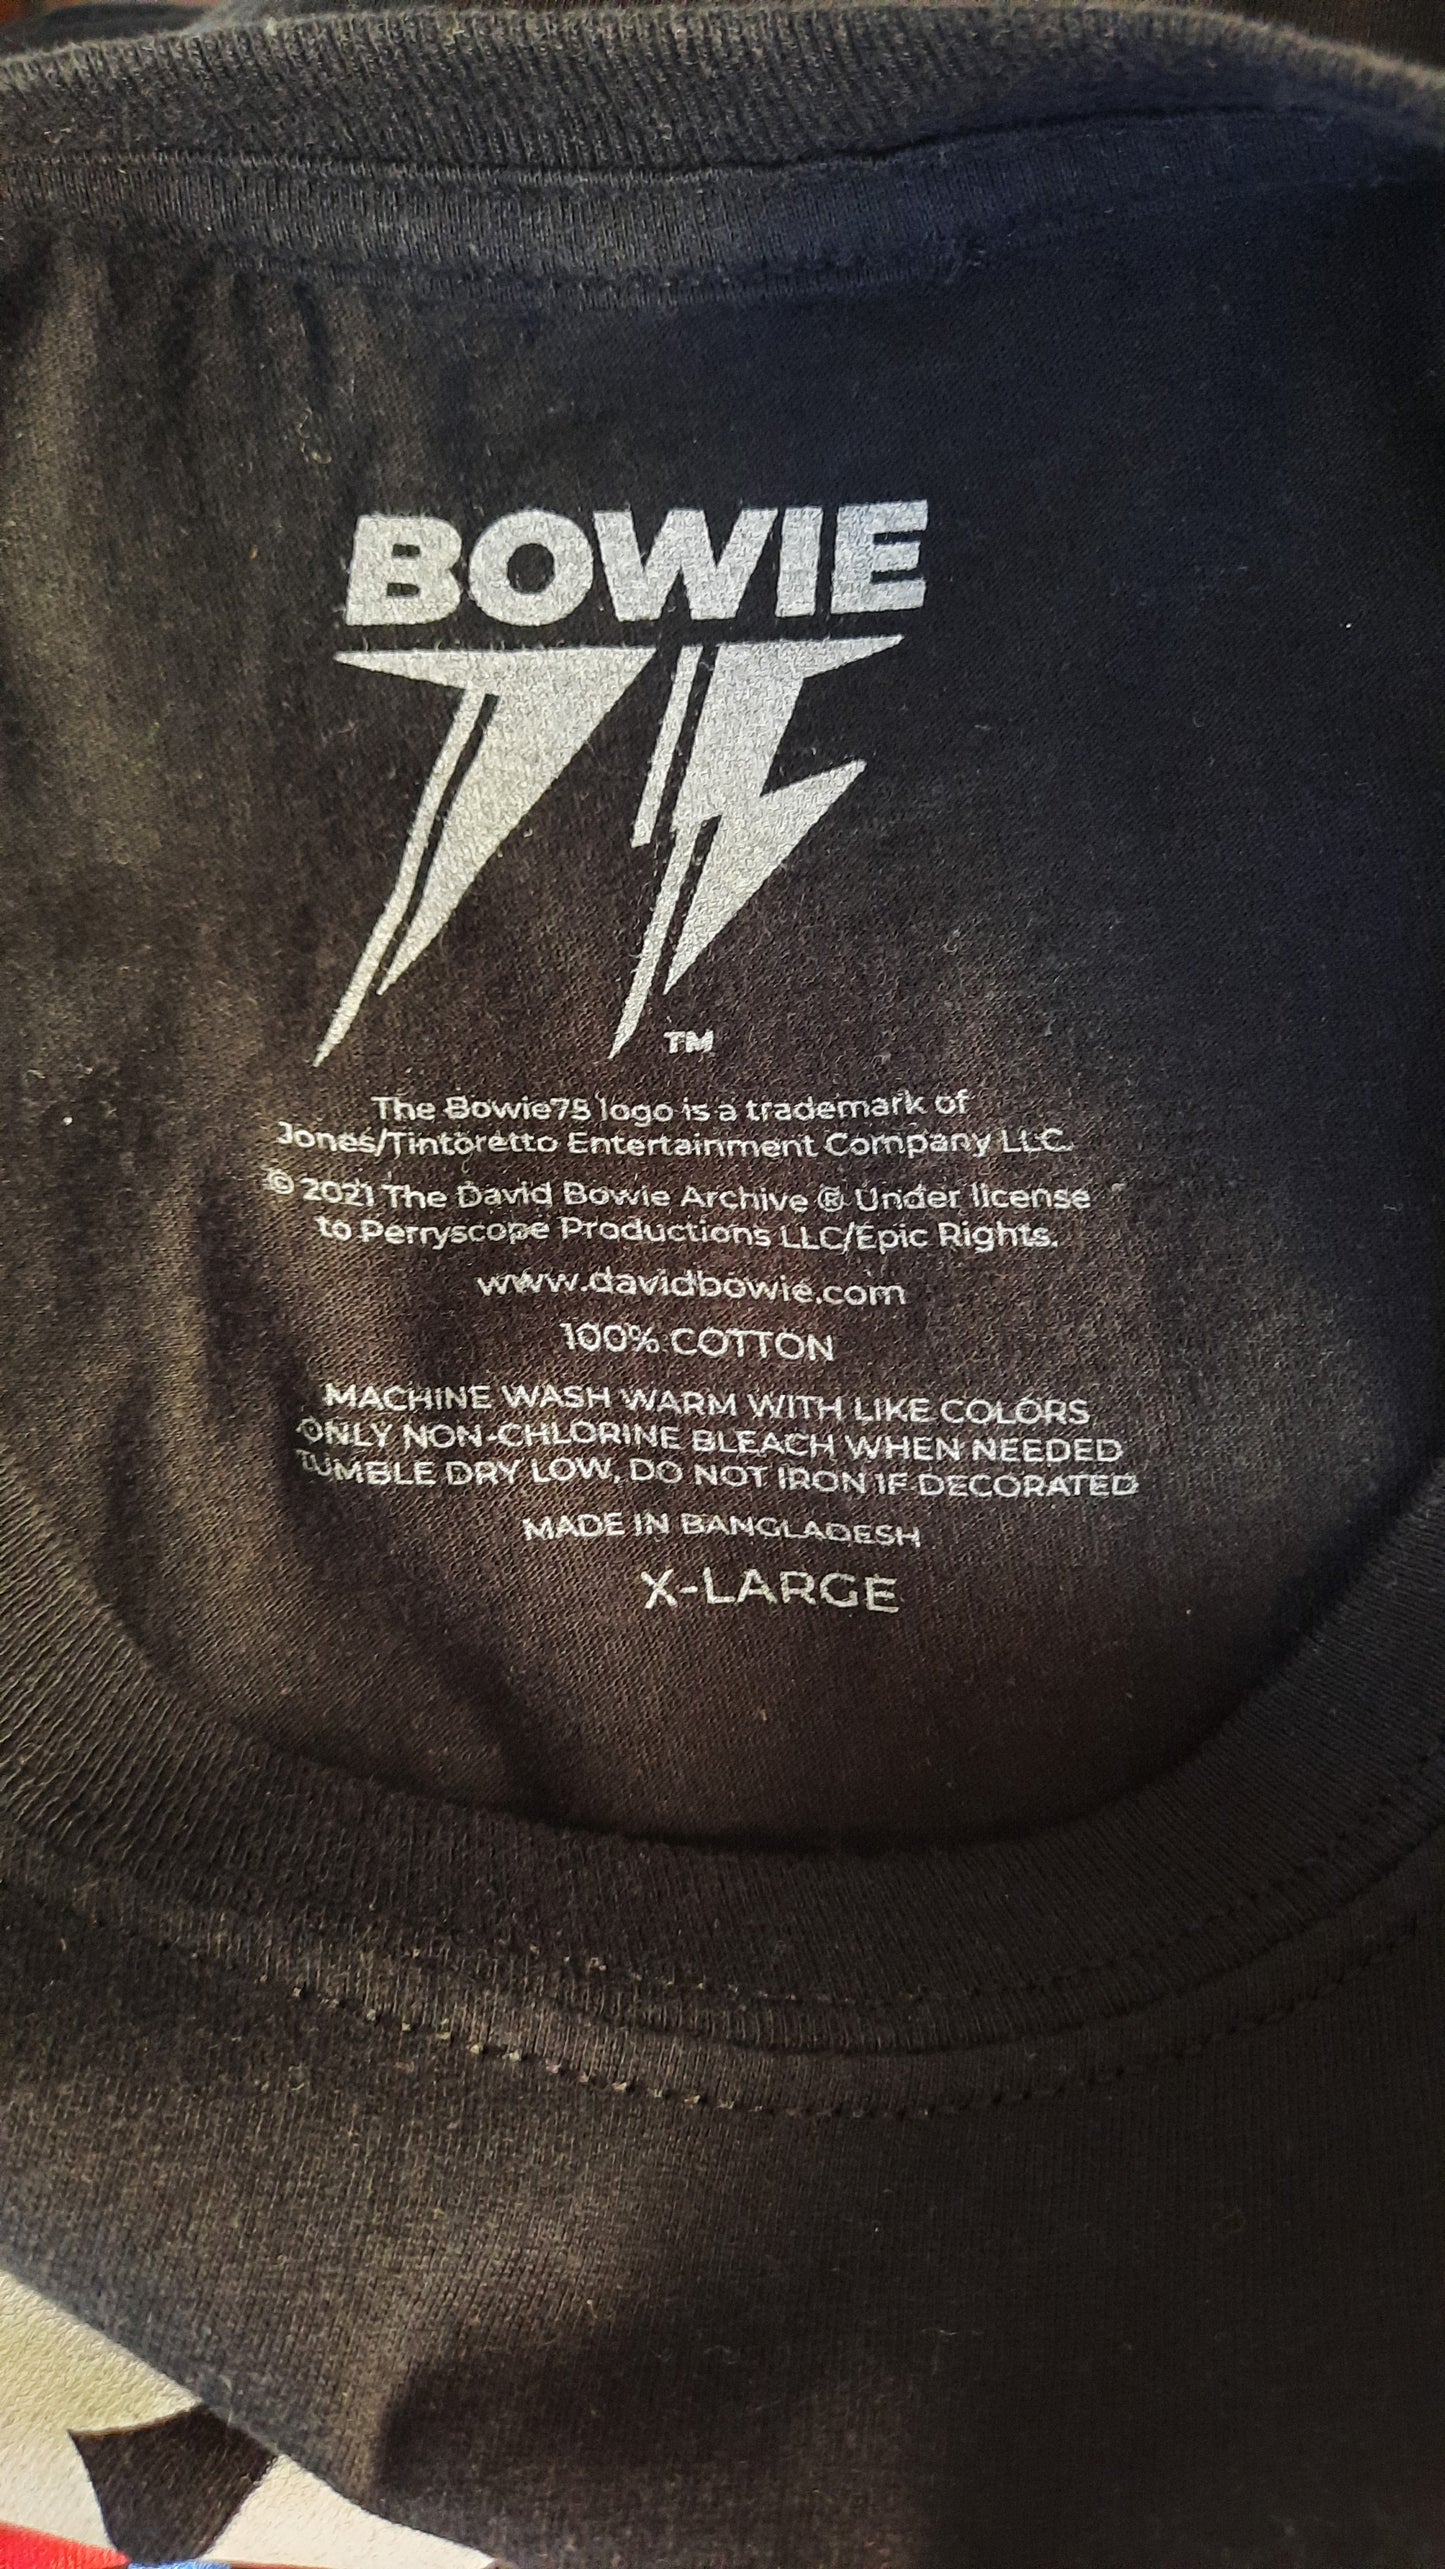 Authentic David Bowie Merchandise Graphic T-shirt